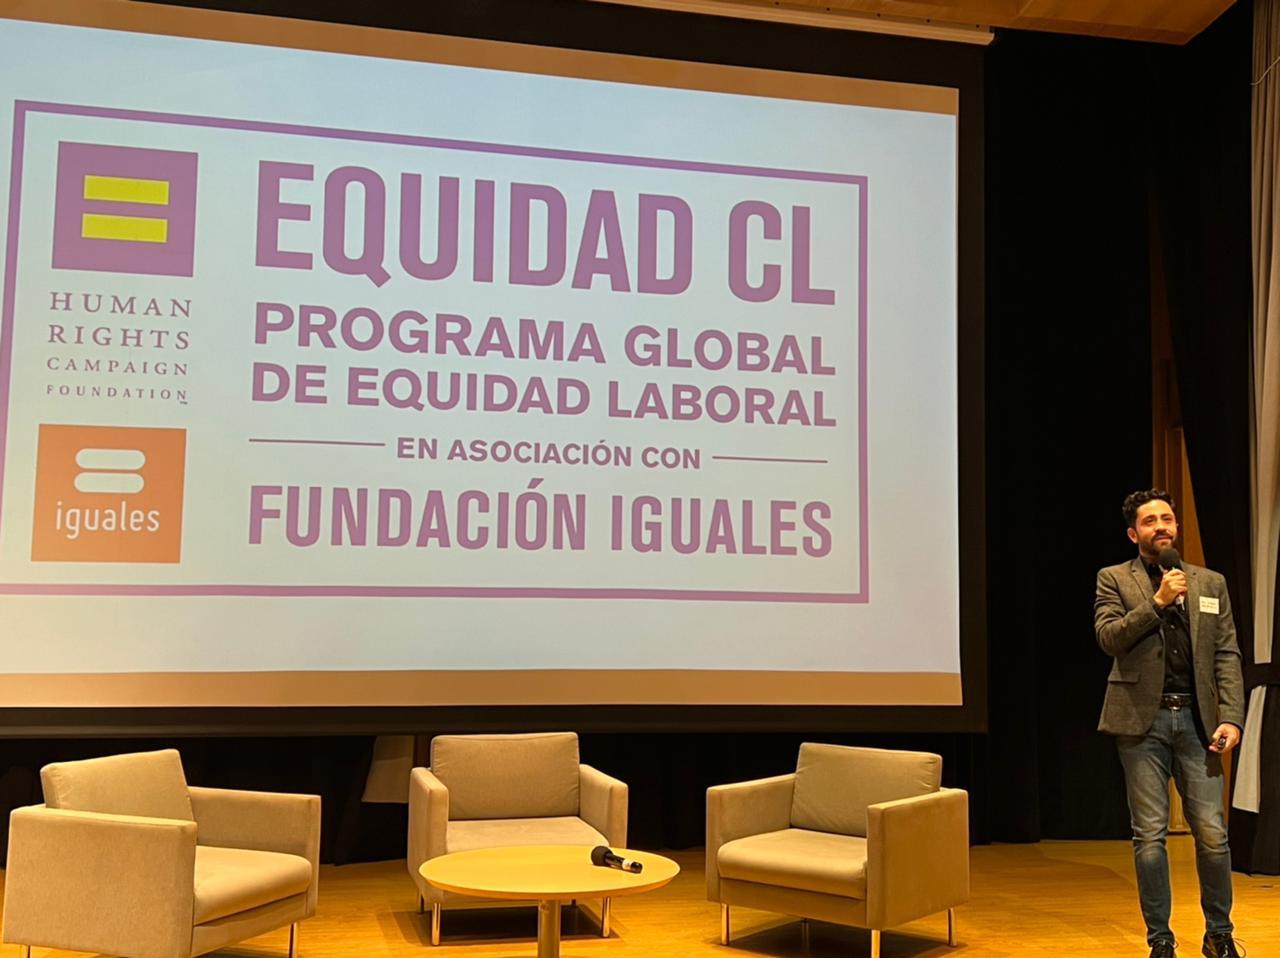 Emilio Maldonado, director y fundador de Pride Connection y socio implementador de Equidad CL